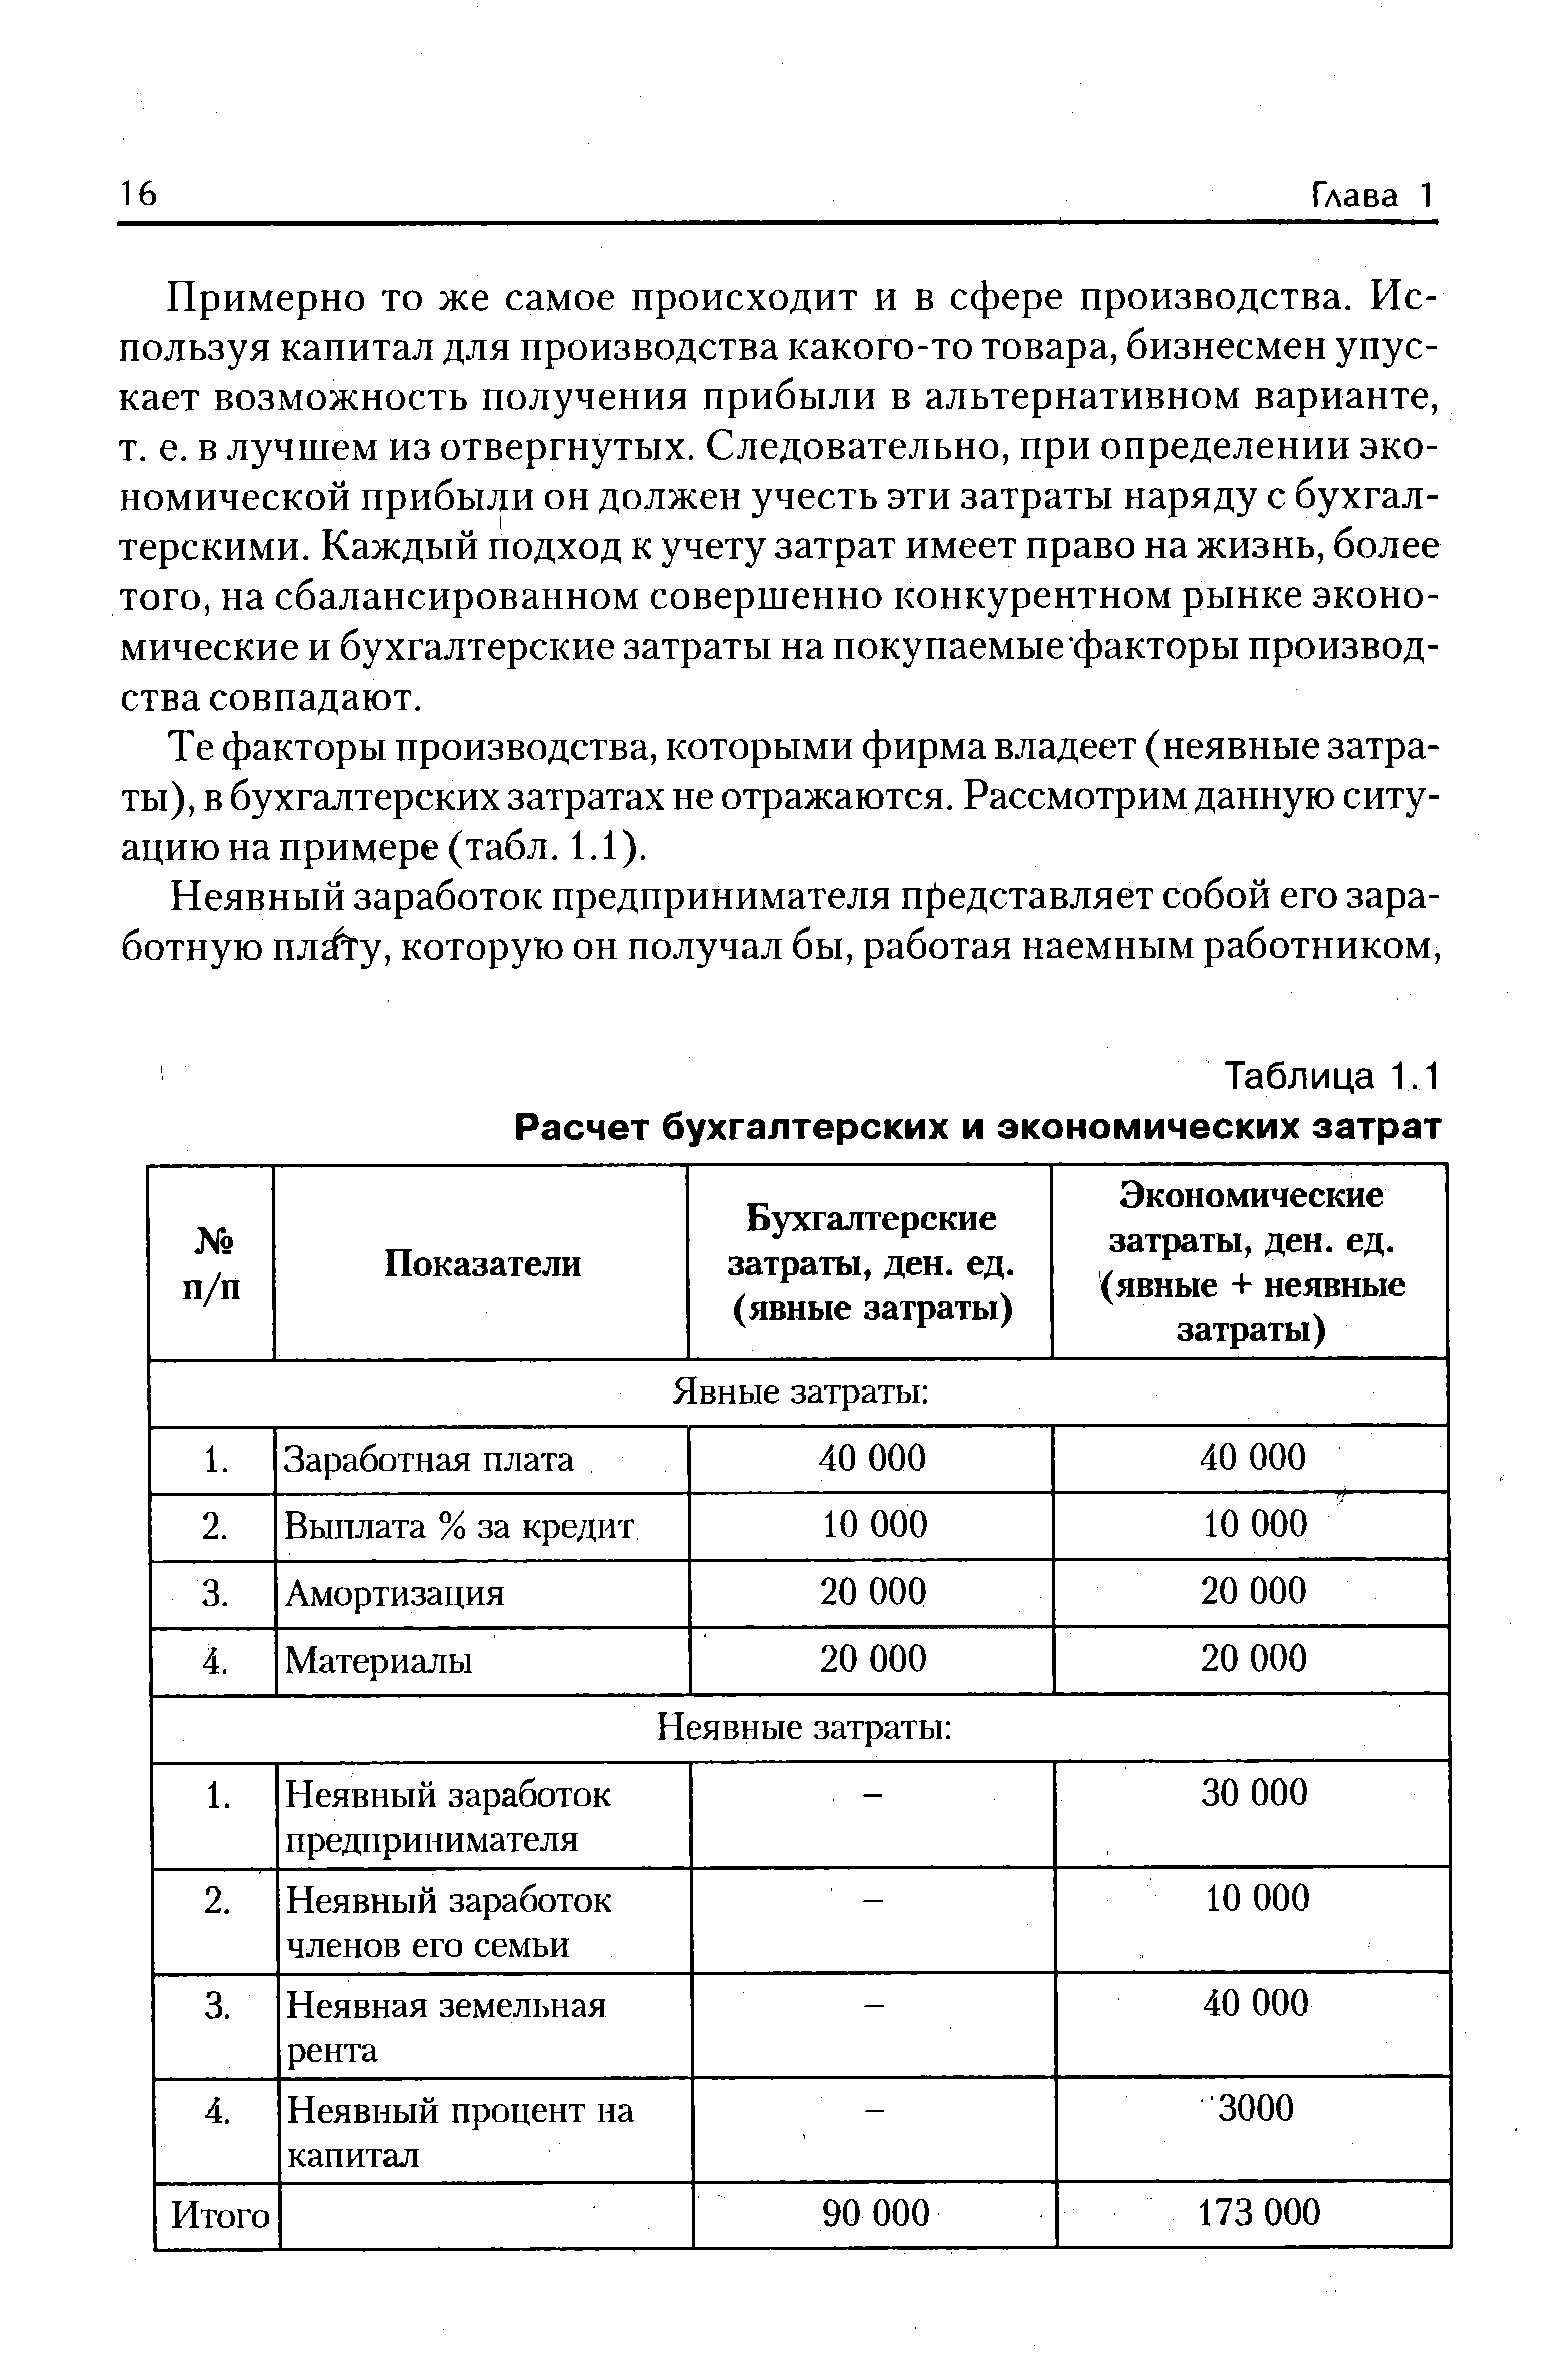 Таблица 1.1 Расчет бухгалтерских и экономических затрат
